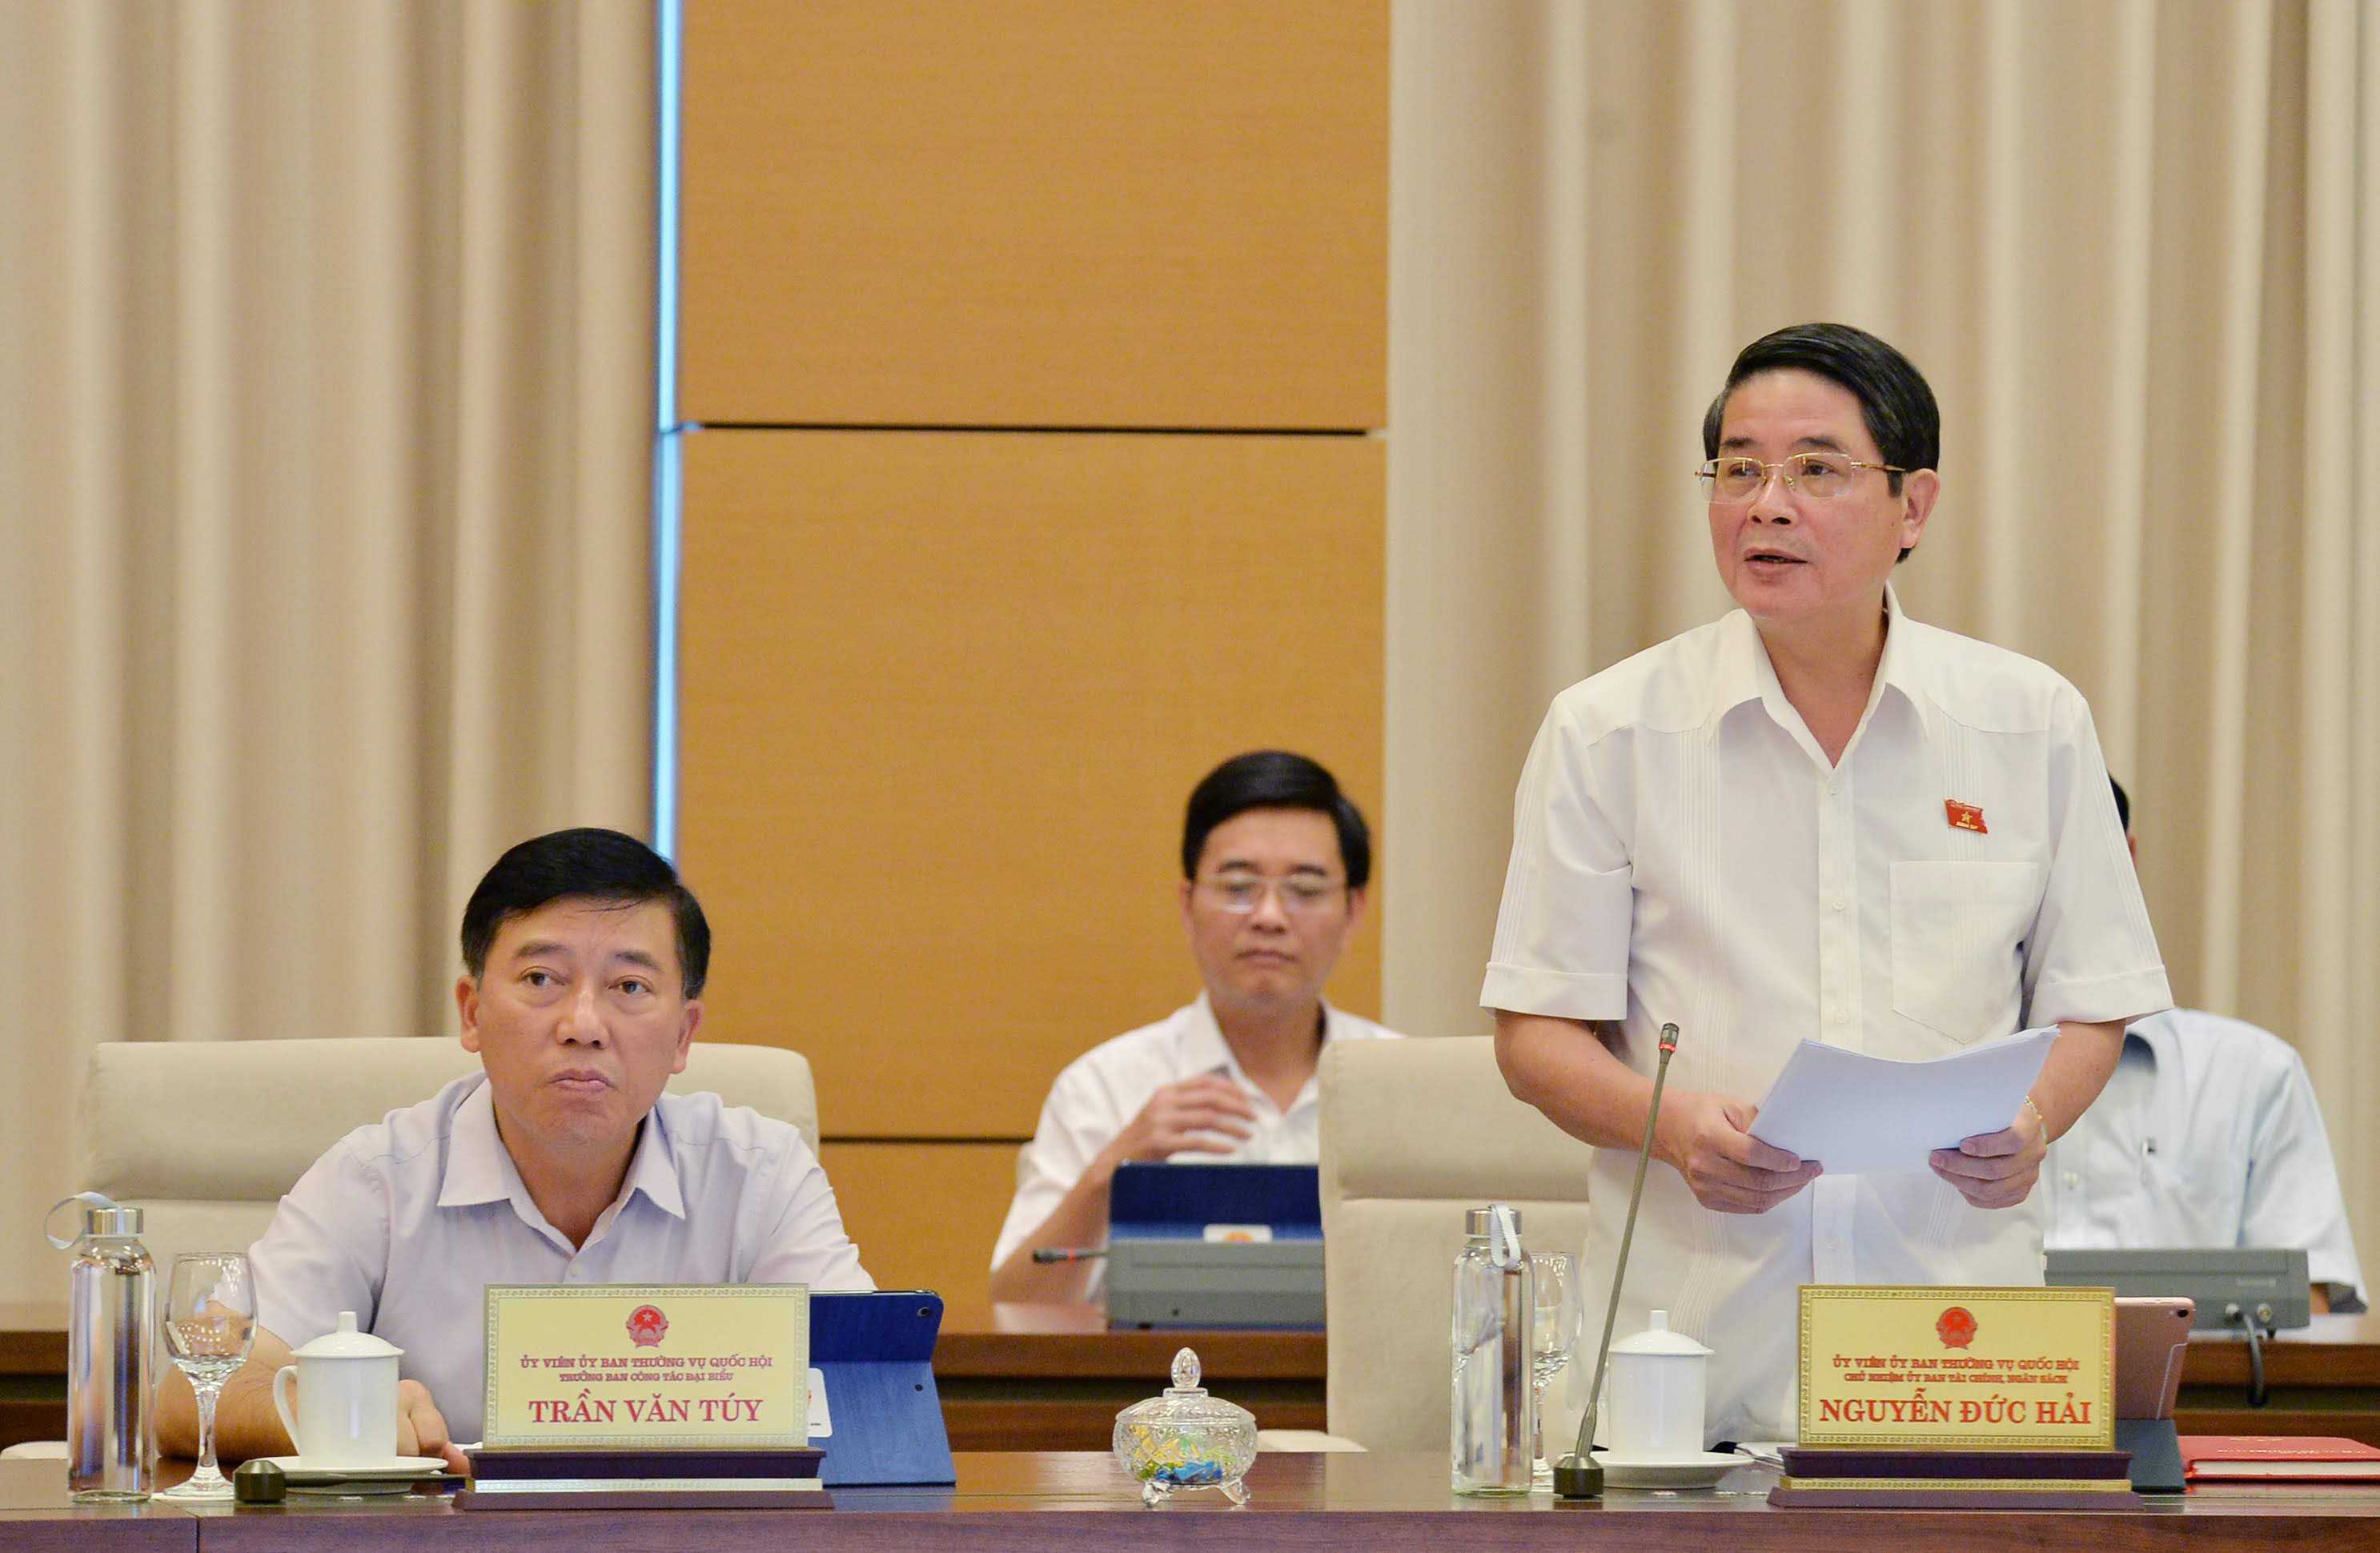 Chủ nhiệm Uỷ ban Tài chính - Ngân sách Nguyễn Đức Hải trình bày báo cáo. Ảnh: VGP/Lê Sơn.